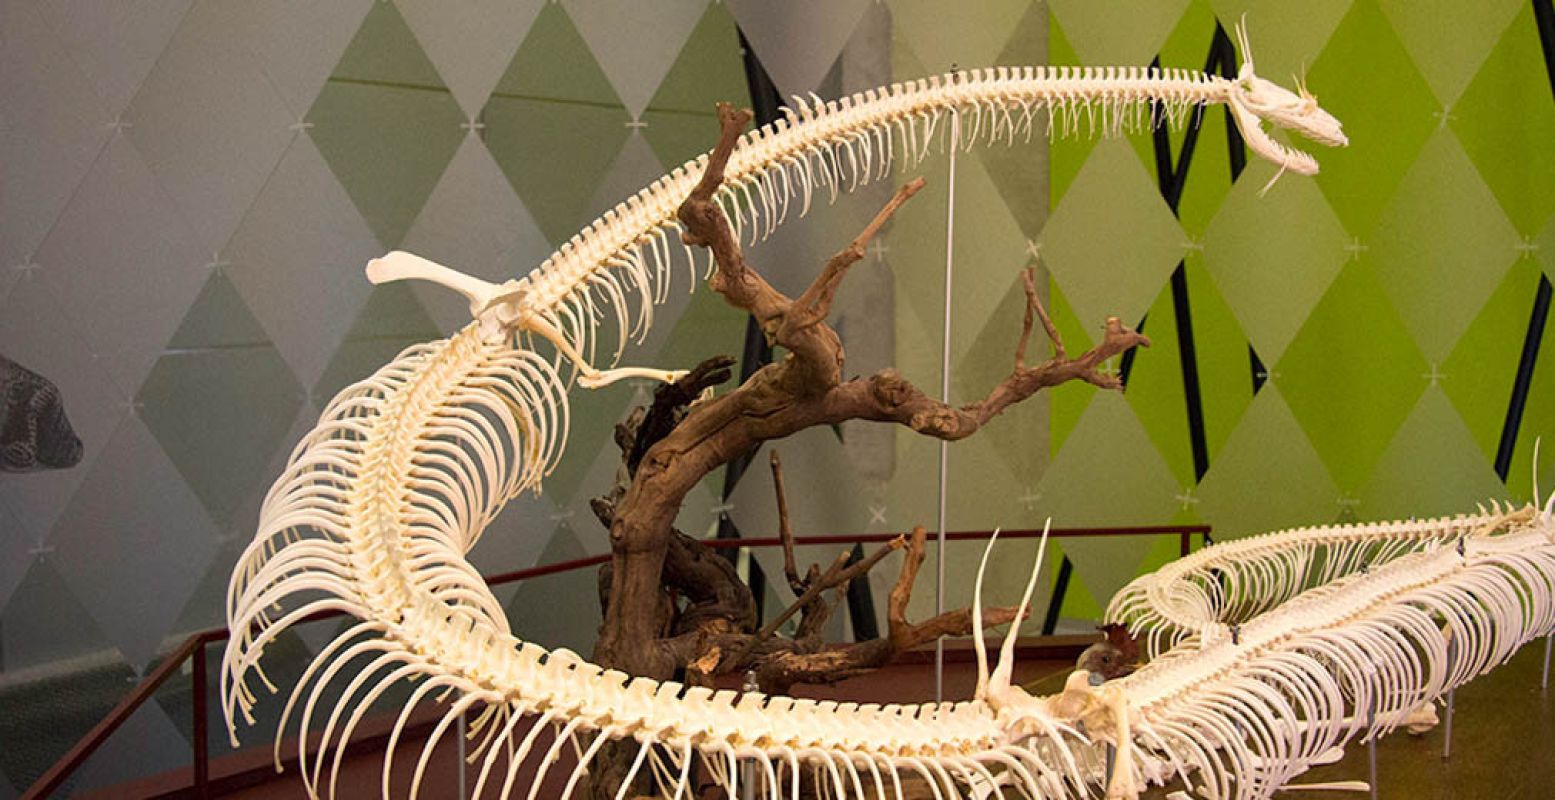 Het skelet werd door een wetenschapper gemaakt met botten van konijnen en kippen en het geraamte van een grote slang. Foto: Limburgs Museum.